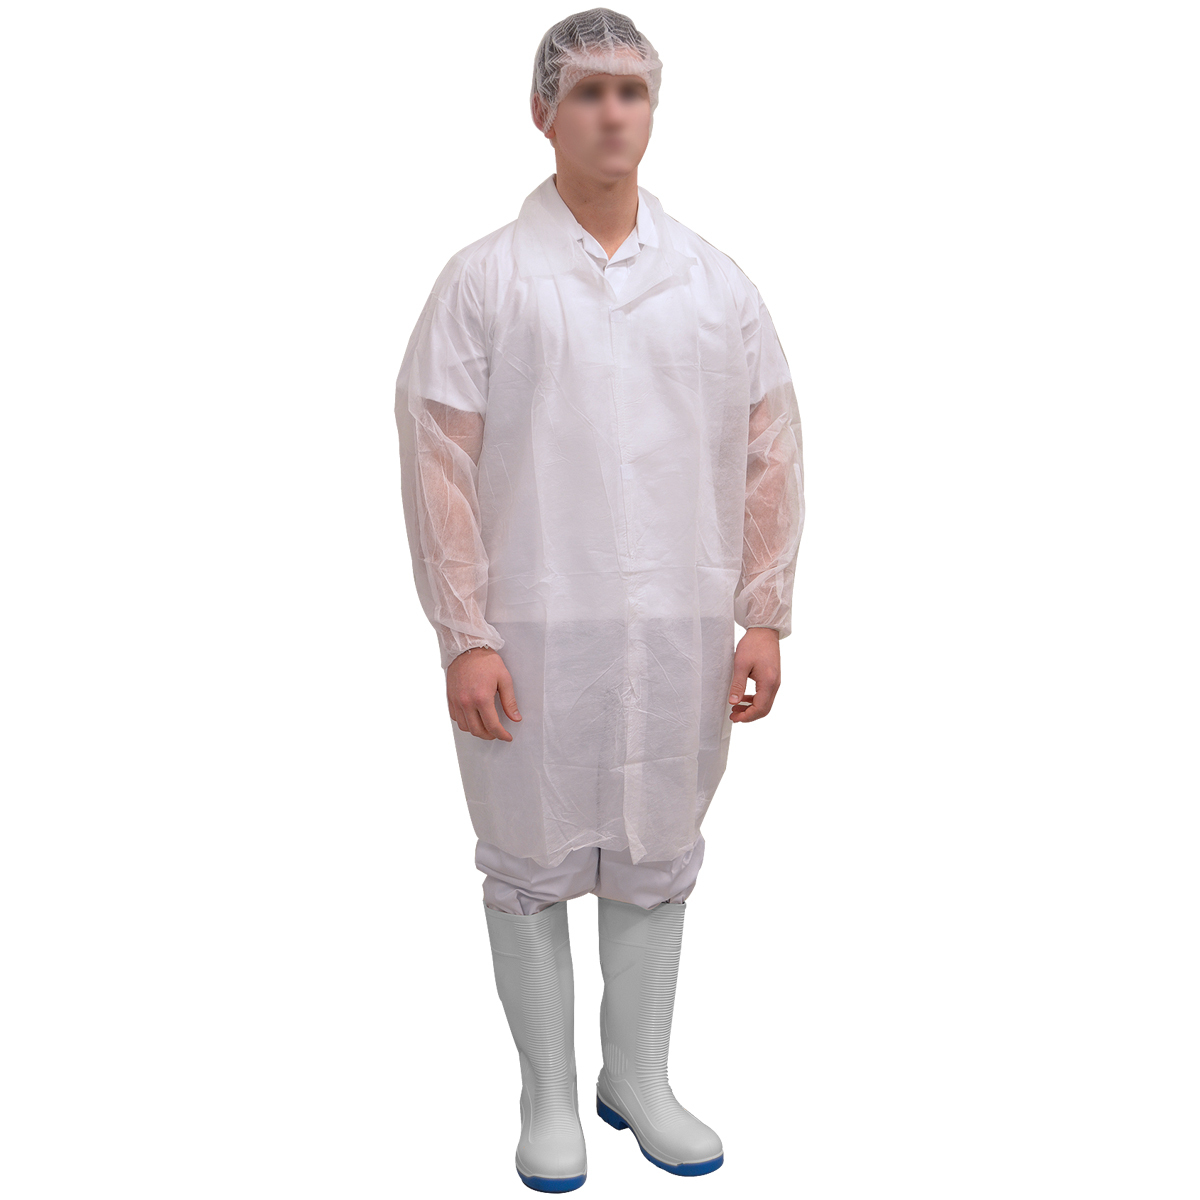 White Disposable Labcoat, Velcro Closure, Medium - 3XL, 100/ctn